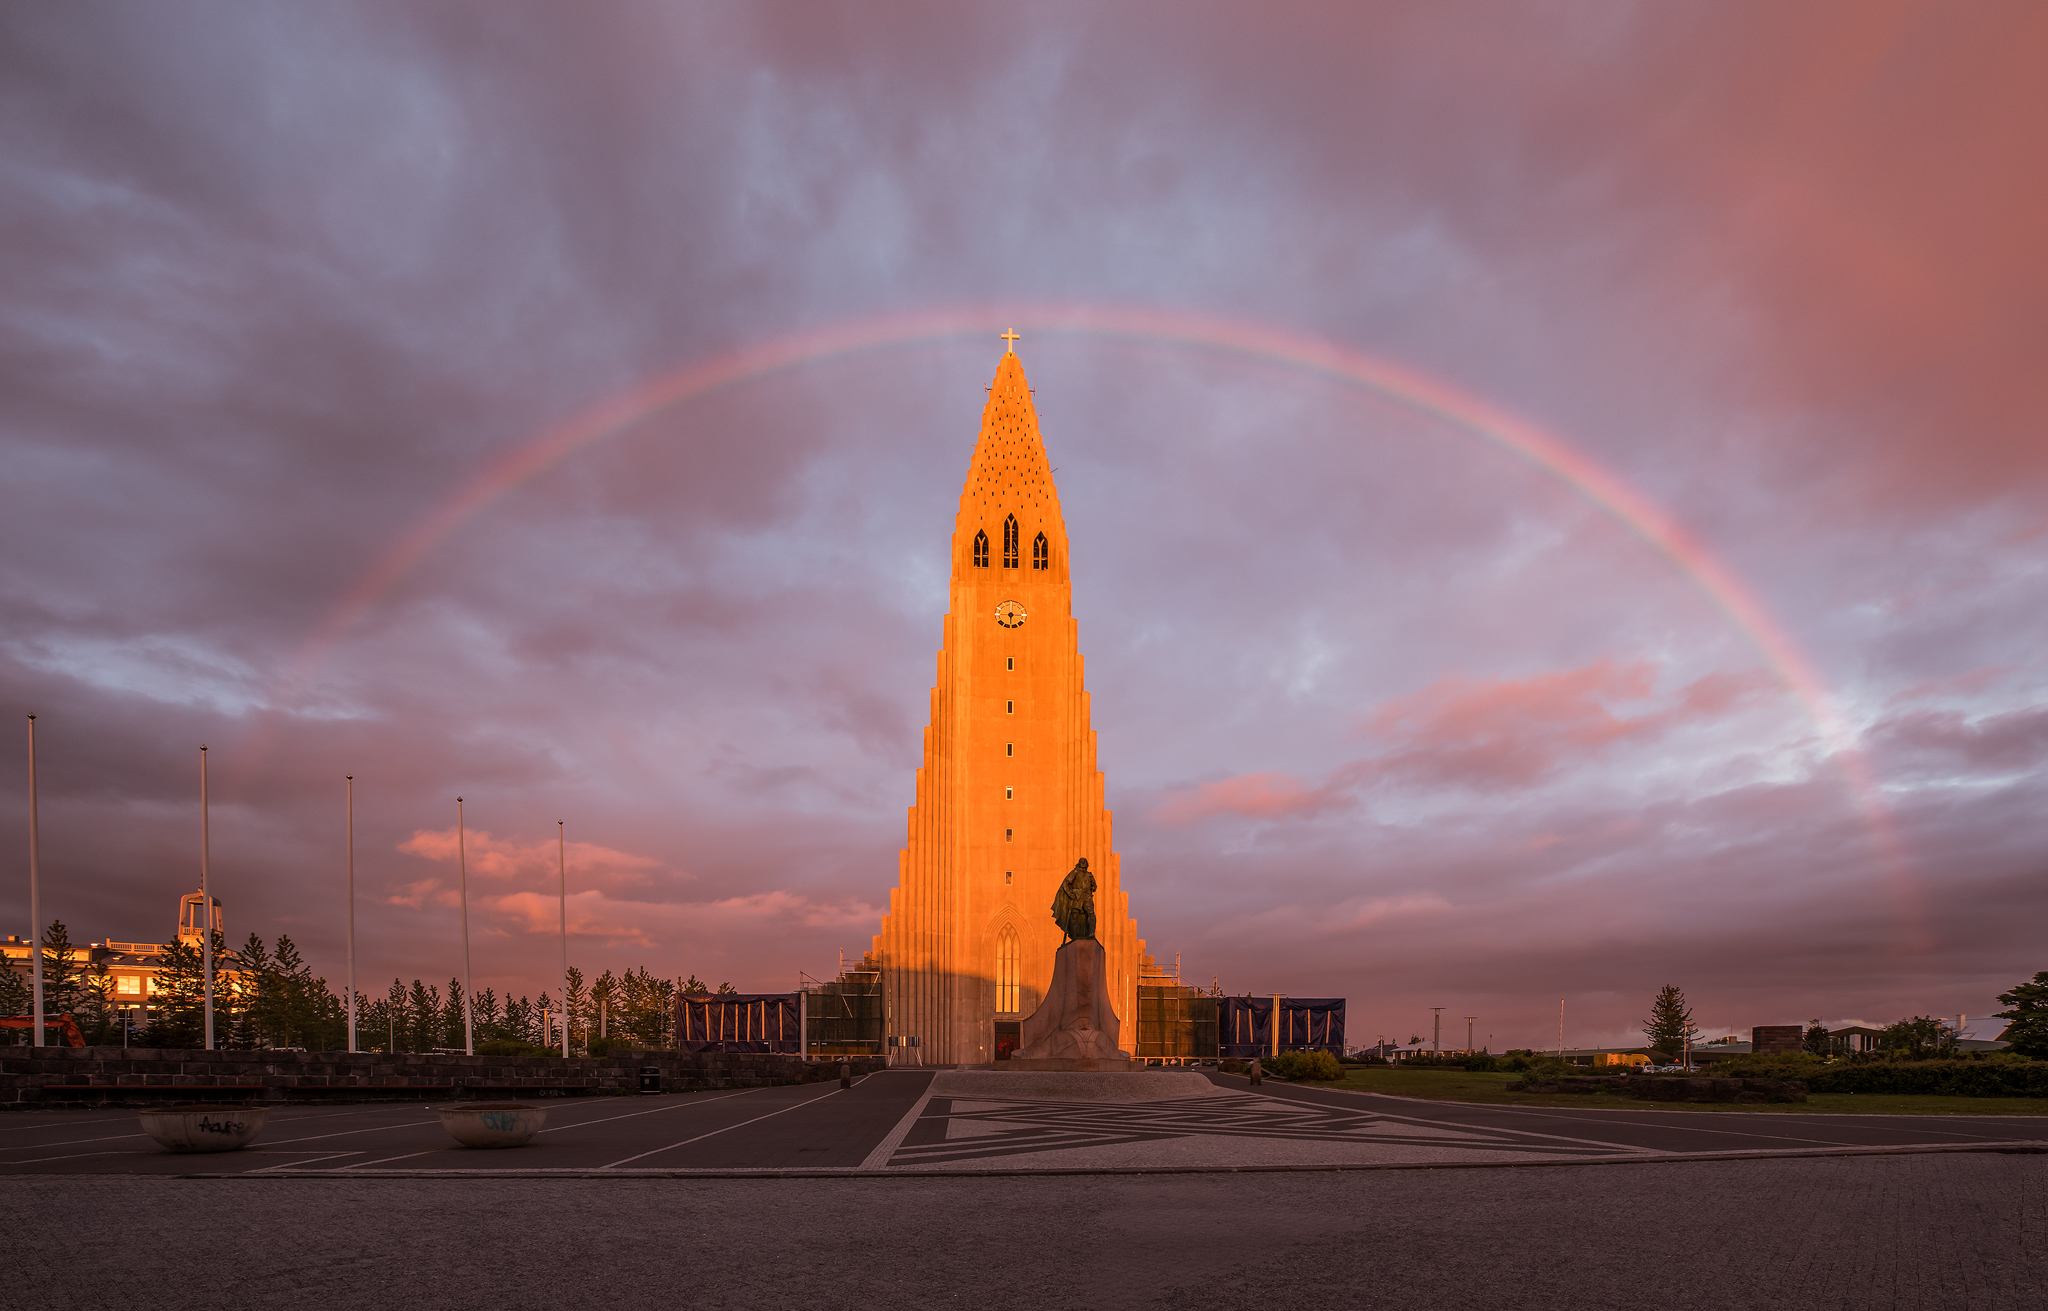 冰岛首都雷克雅未克的哈尔格林姆斯大教堂被罩在彩虹之下